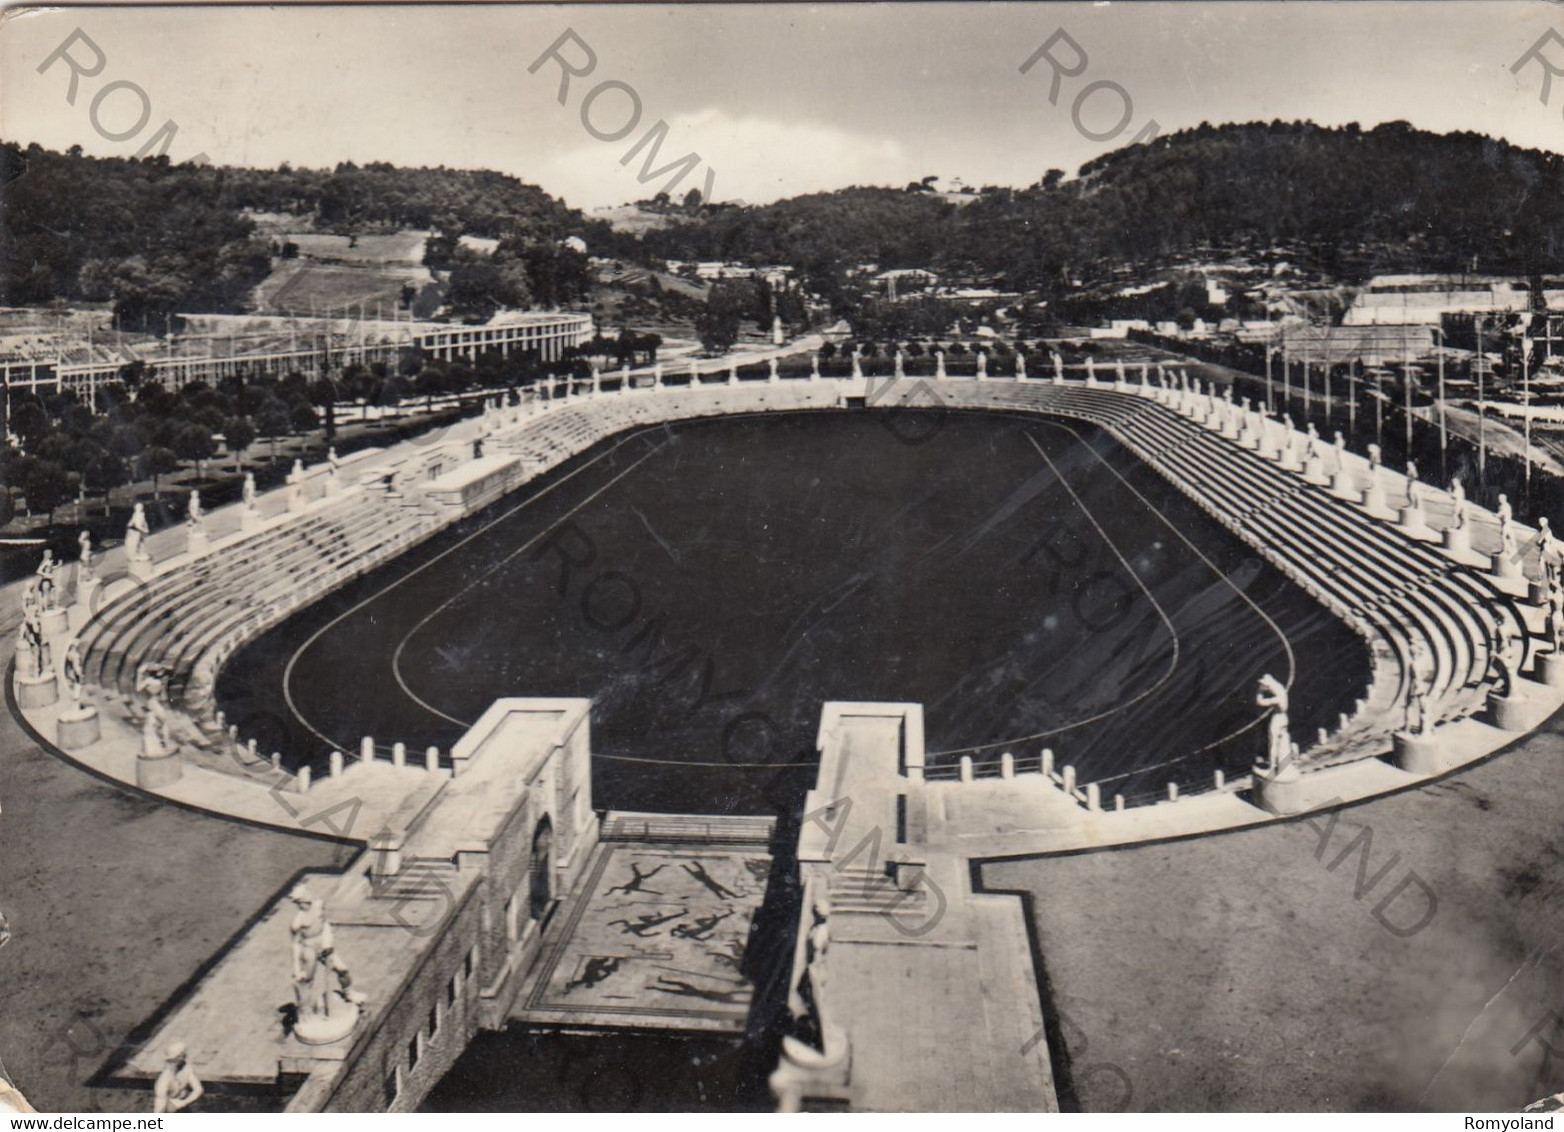 CARTOLINA  ROMA,LAZIO,FORO ROMANO-RELIGIONE,ROMA CAPITALE,IMPERO ROMANO,STORIA,CULTURA,MEMORIA,VIAGGIATA 1952 - Stadiums & Sporting Infrastructures